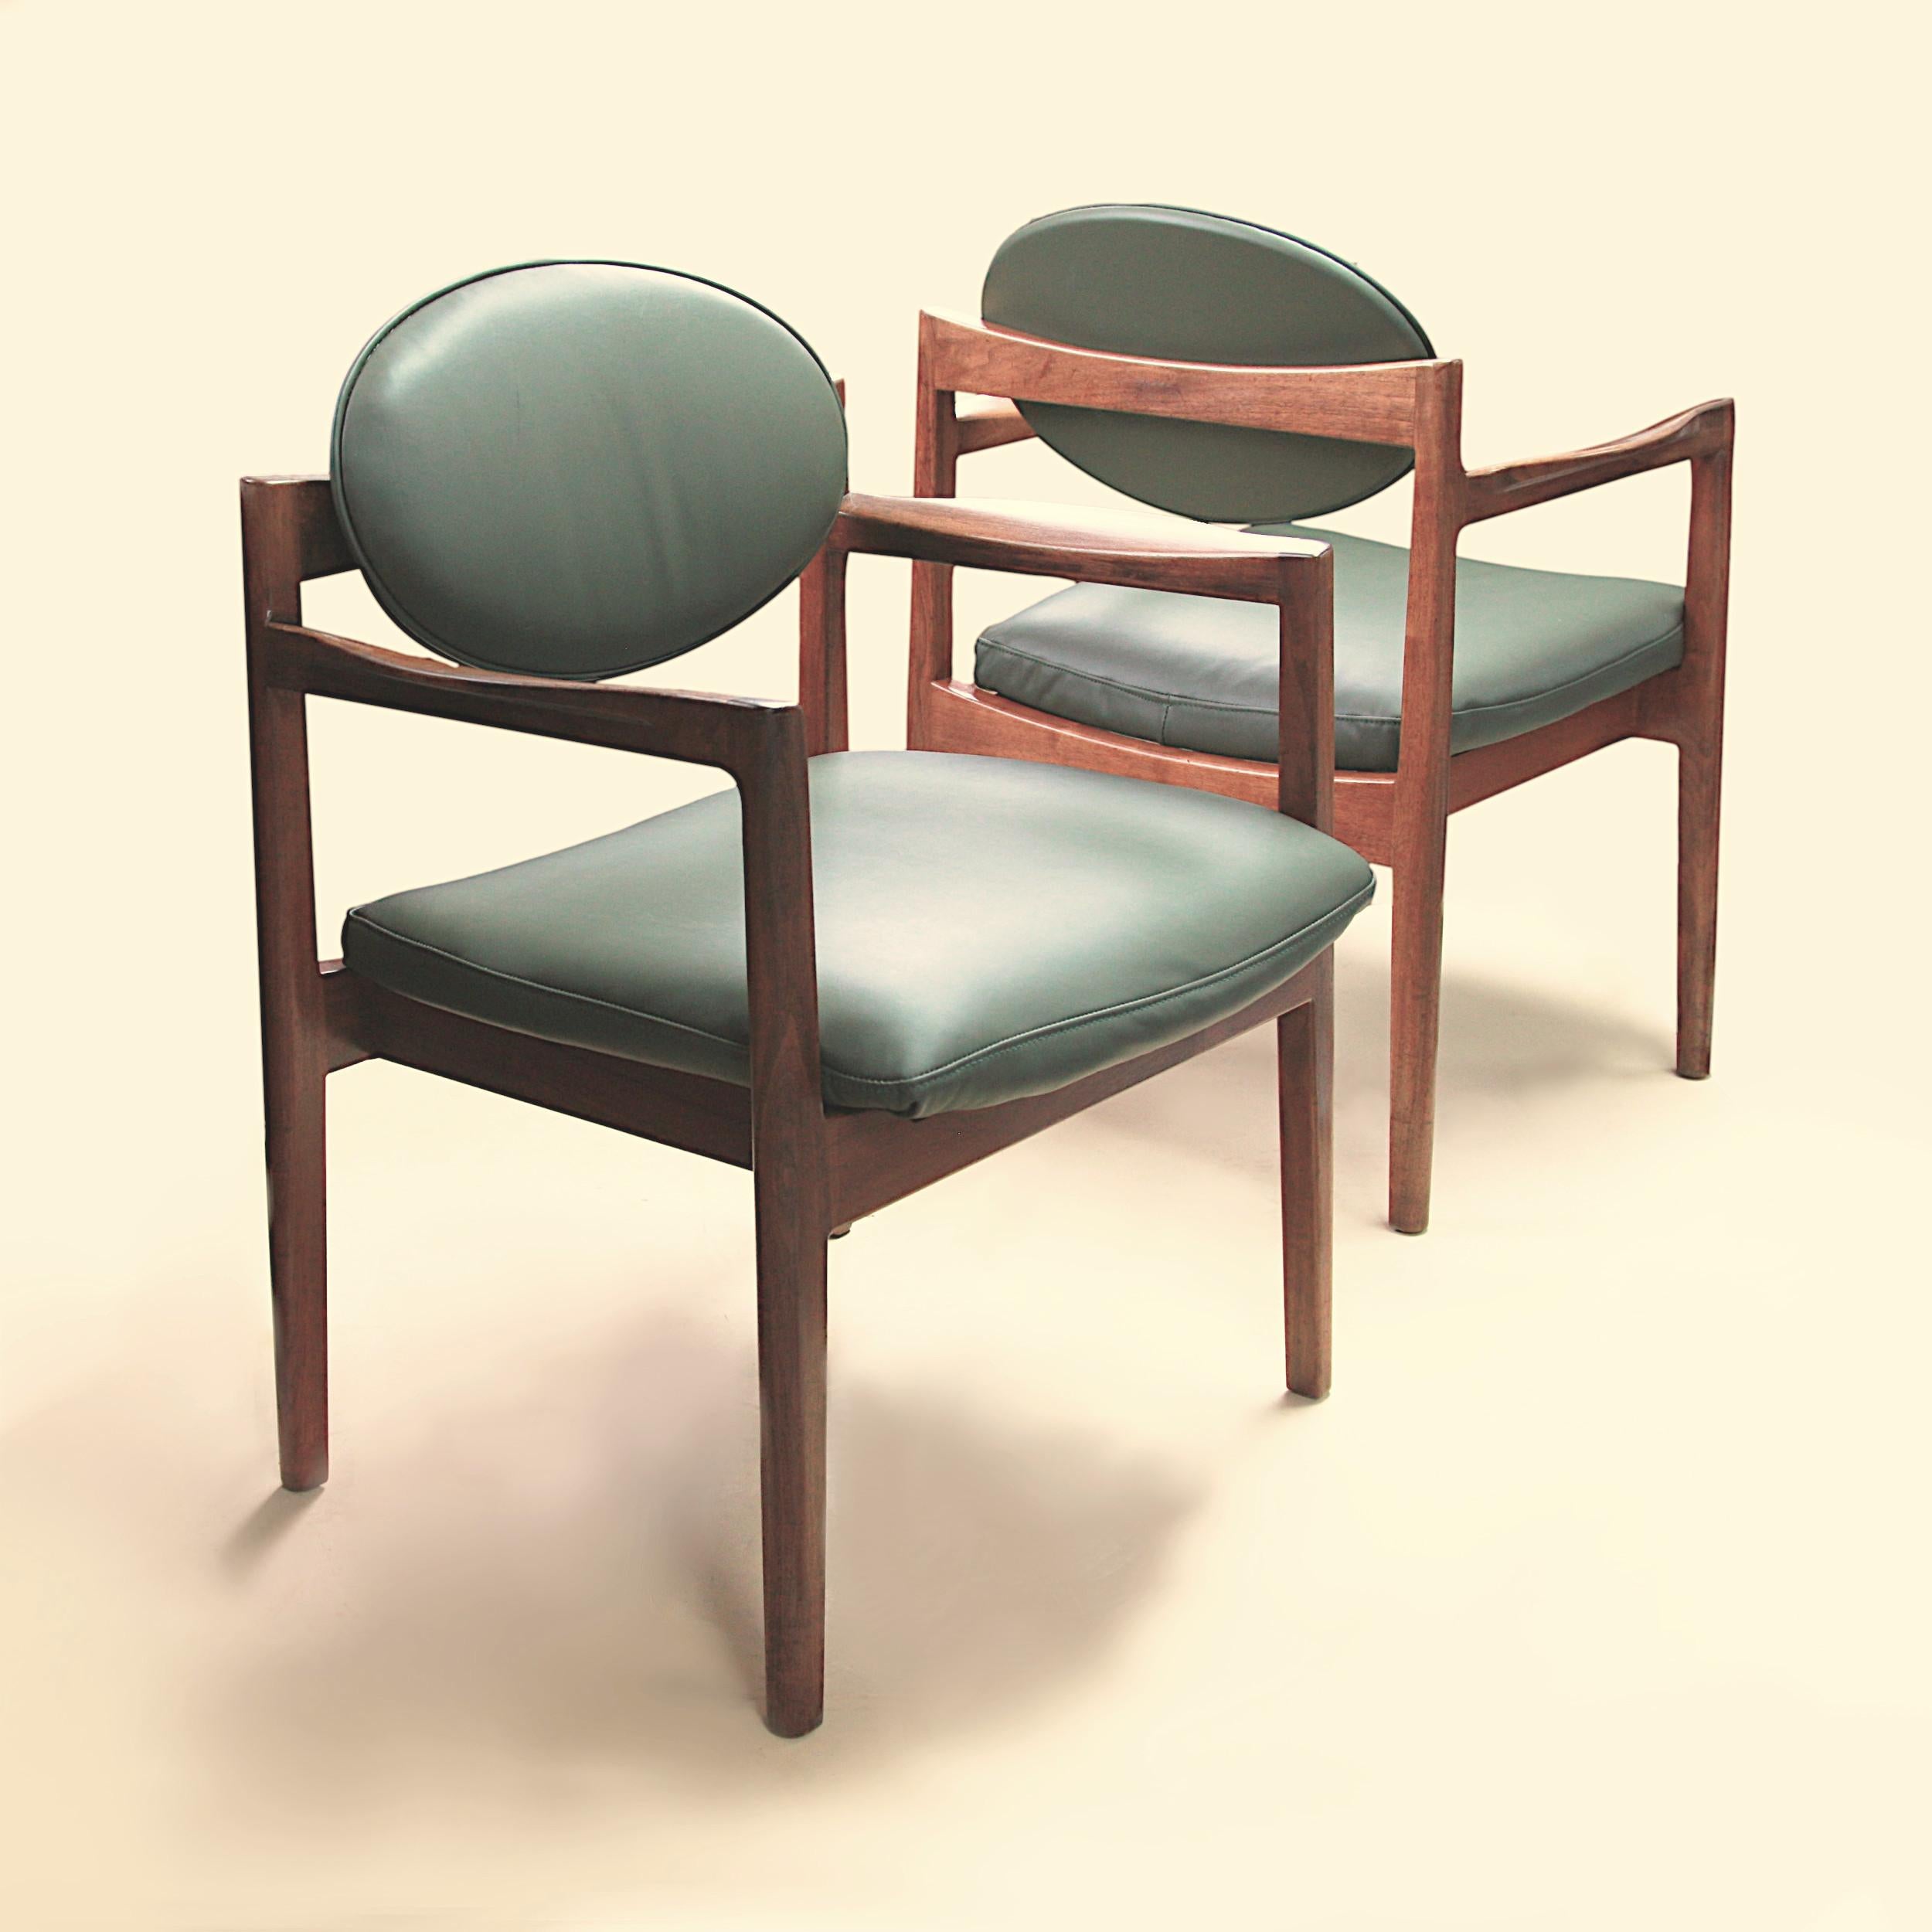 Ein fantastisches Paar Mid-Century Modern Clubstühle aus grünem Leder und Walnussholz des dänisch-amerikanischen Designers Jens Risom. Diese Stühle aus den 1960er Jahren sind in einem sehr schönen Vintage-Zustand. Die Stühle zeichnen sich durch ein